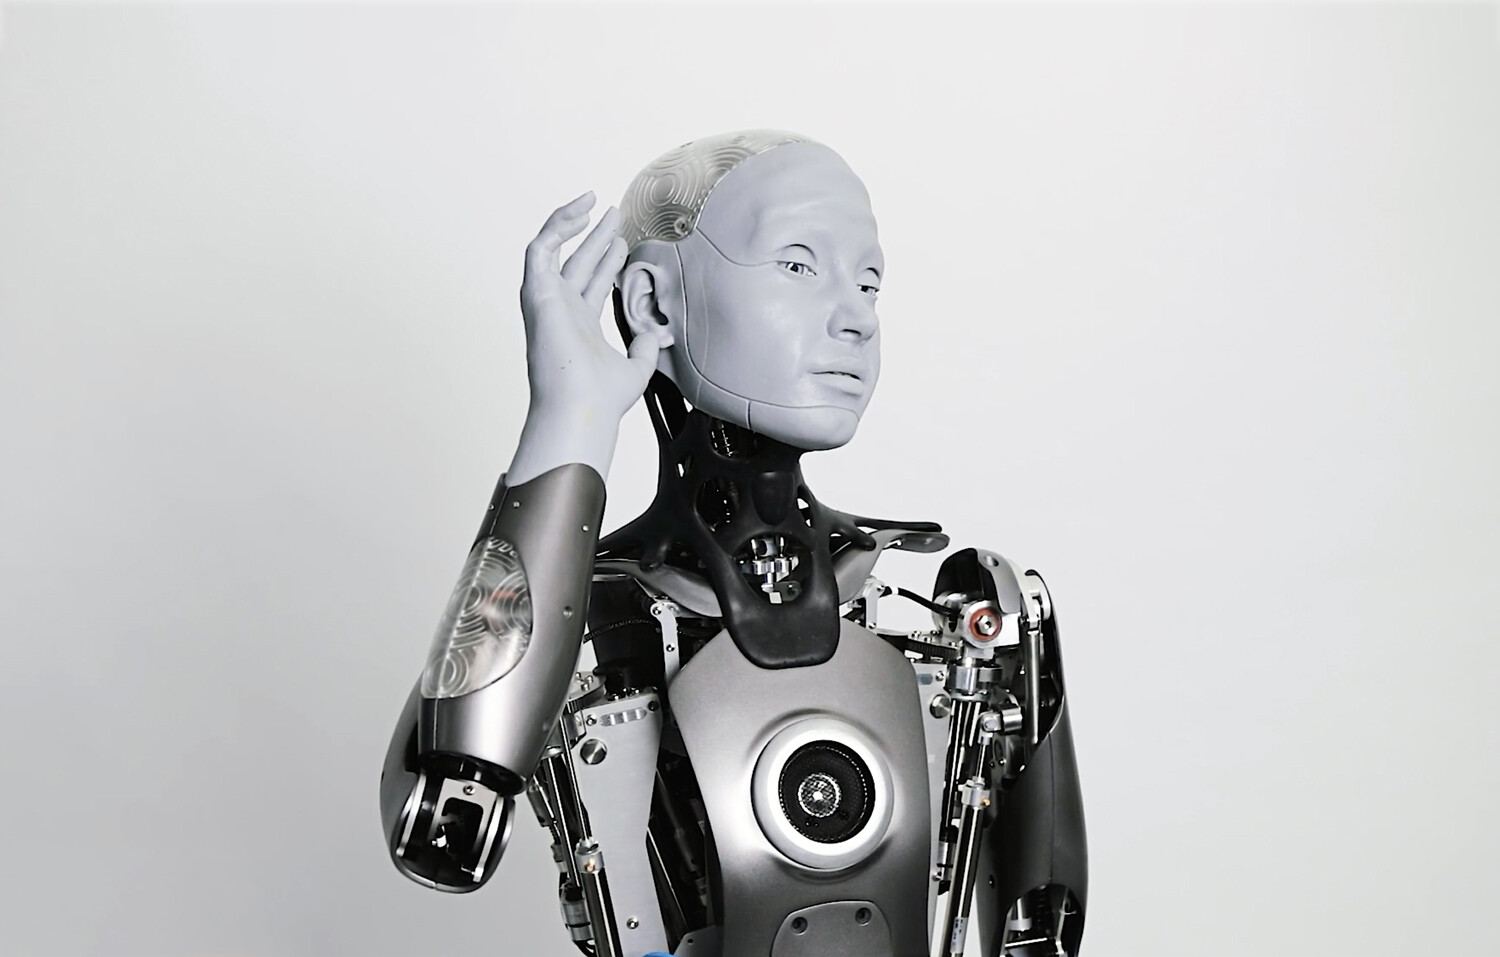 Misionero Prueba de Derbeville adolescente Los 8 robots más sorprendentes de 2021